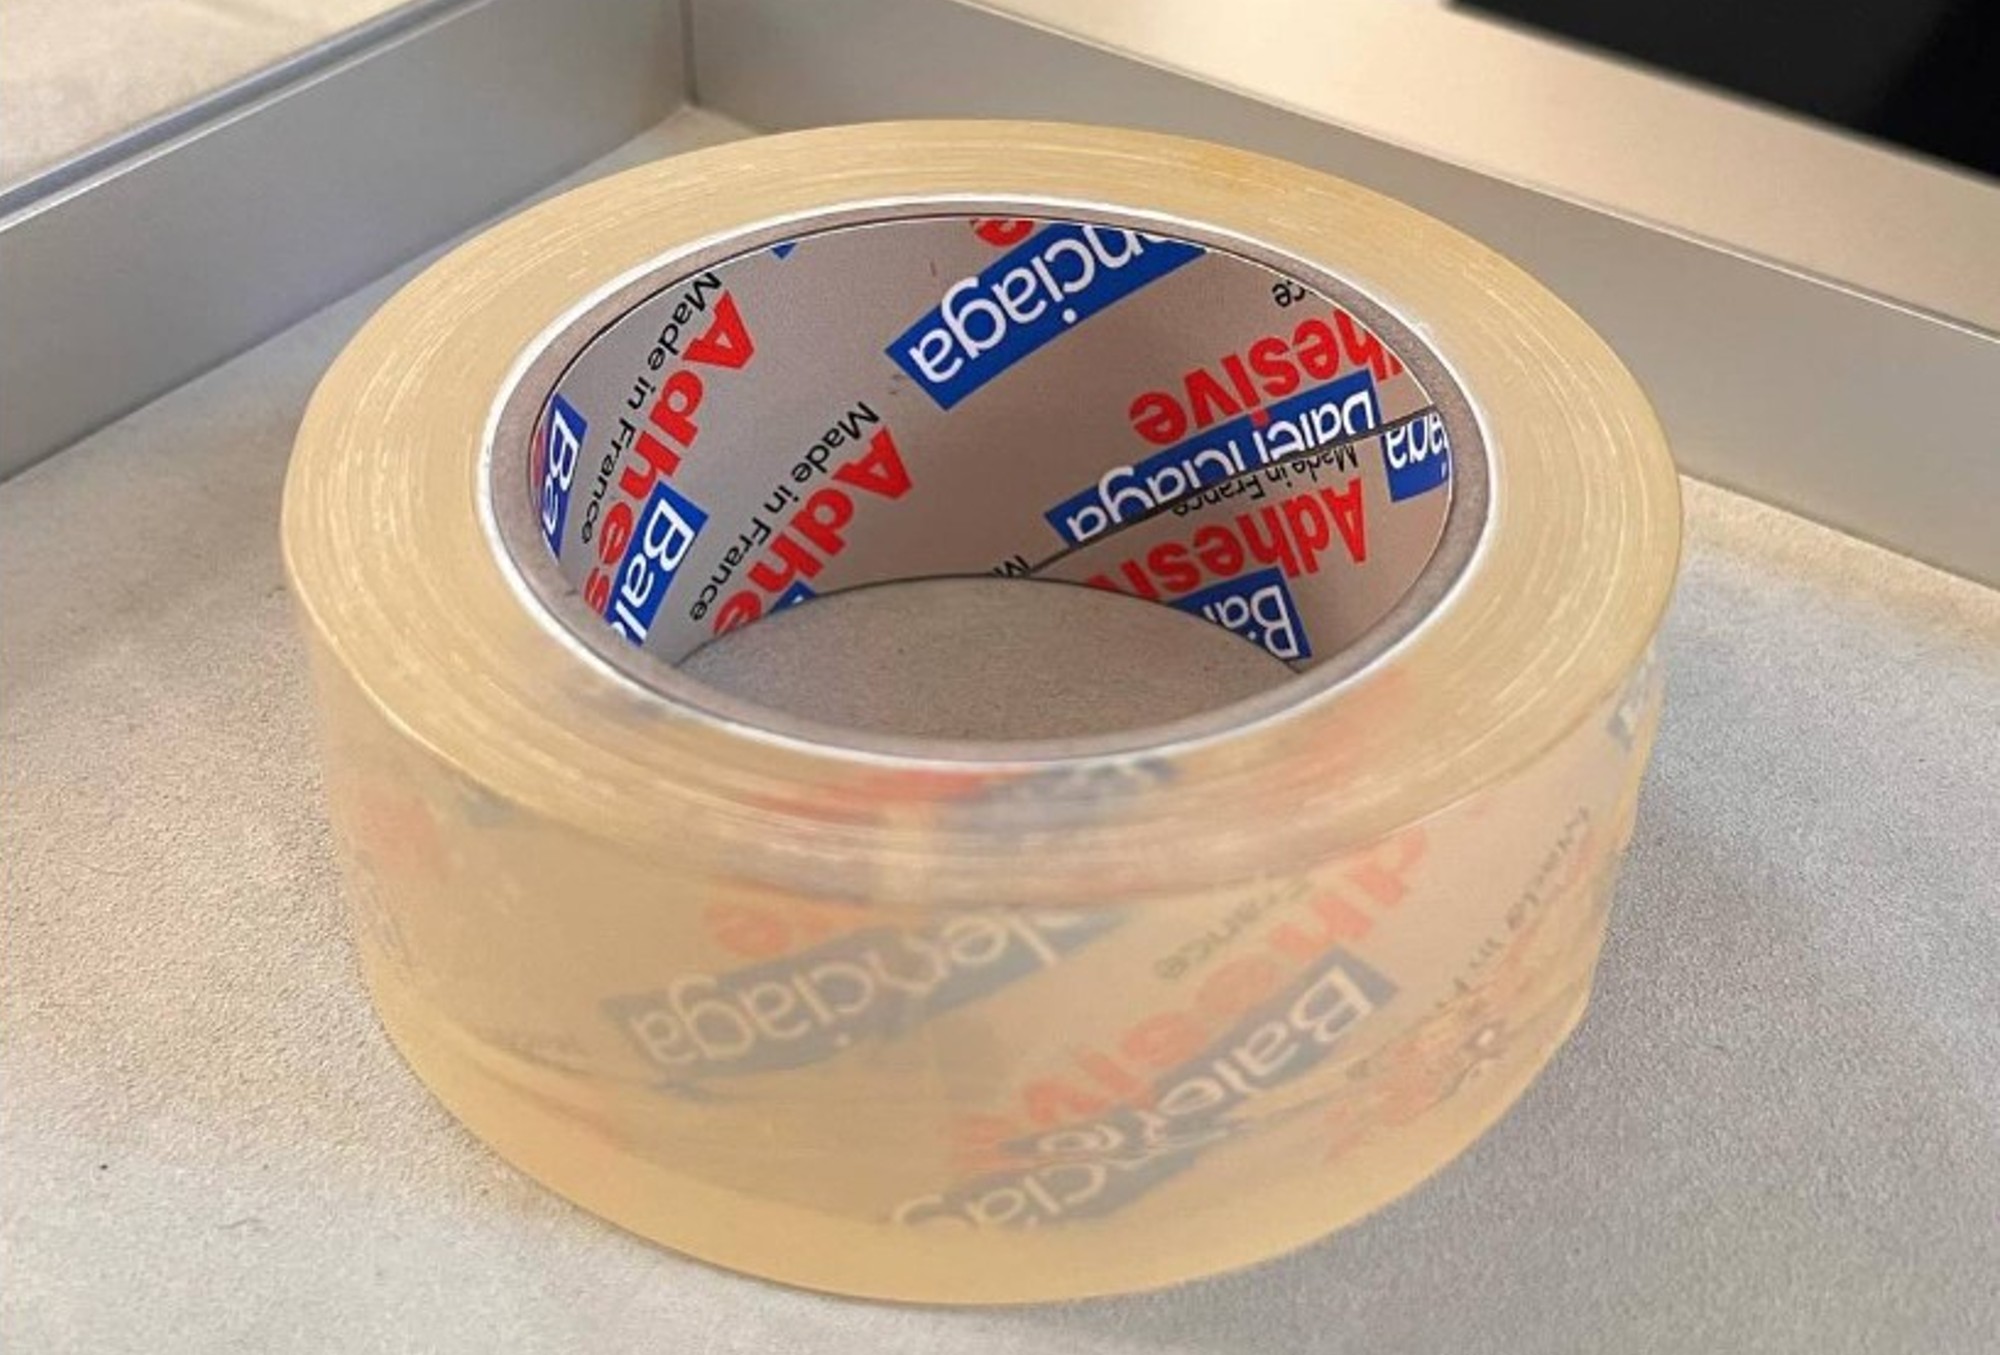 ¿Qué opinaría Cristóbal Balenciaga sobre esta "cinta adhesiva" con su marca?